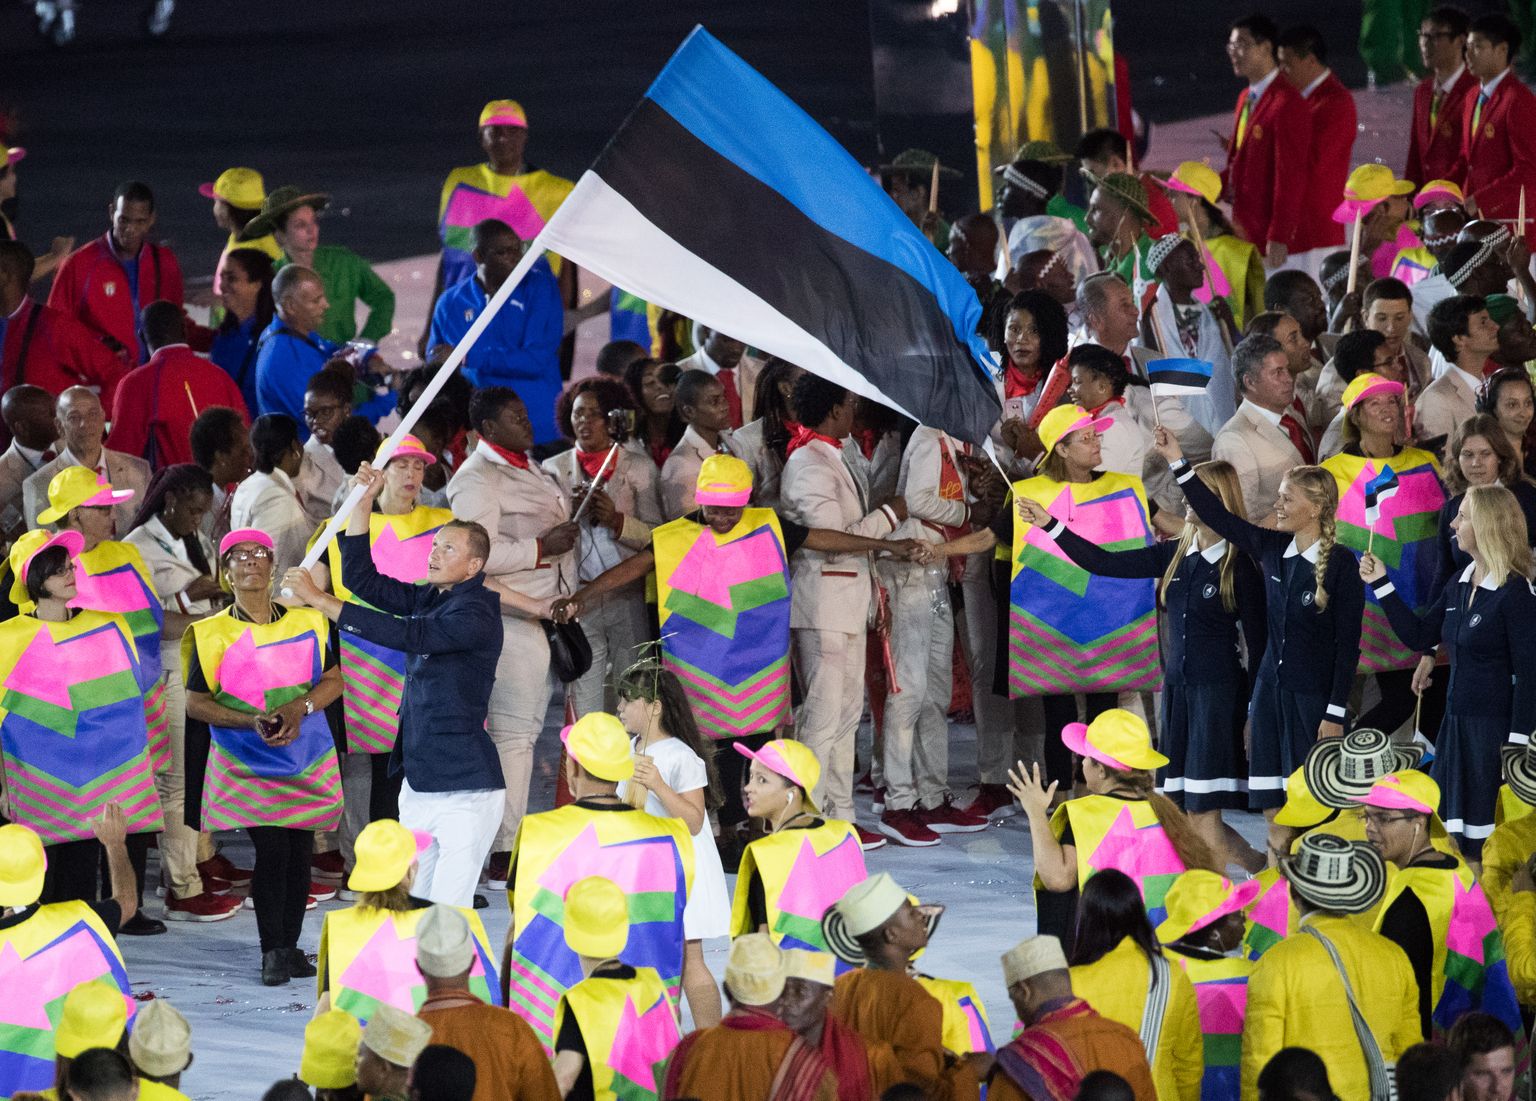 Karl-Martin Rammo kandis viis aastat tagasi Rio de Janeiro olümpia avatseremoonial Eesti lippu.